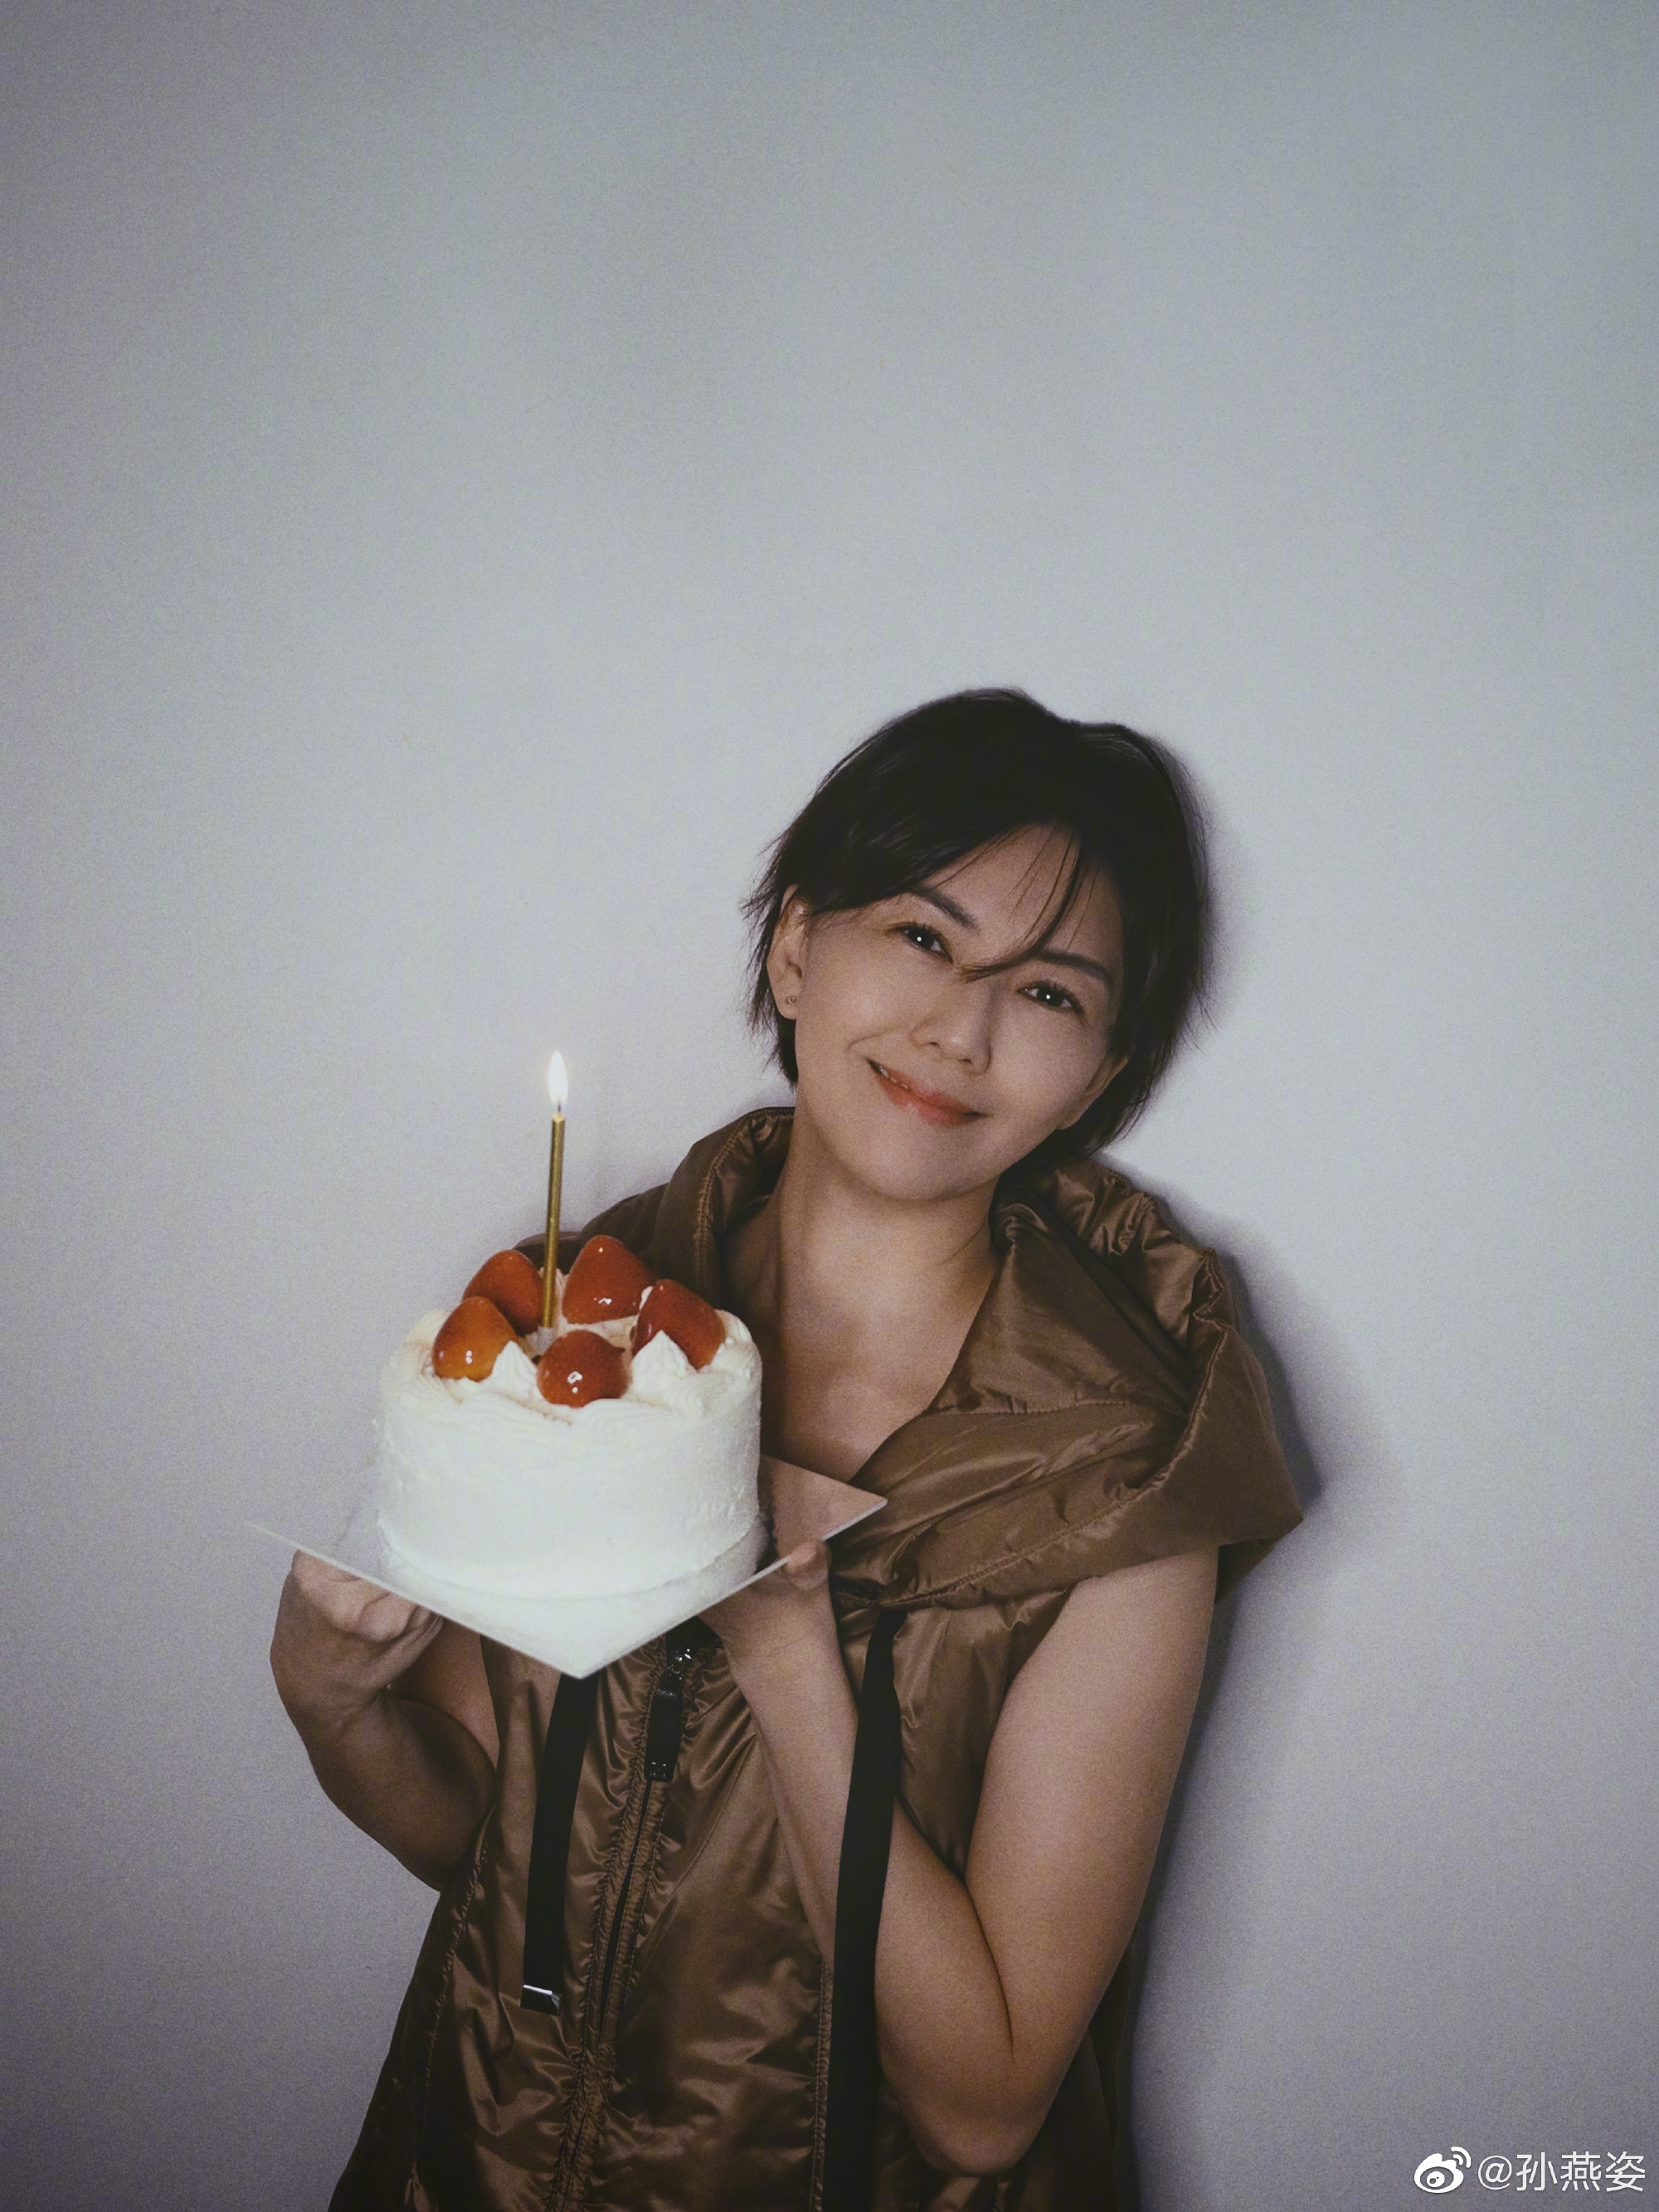 孙燕姿发文为自己庆祝生日 手捧蛋糕出镜笑容甜美